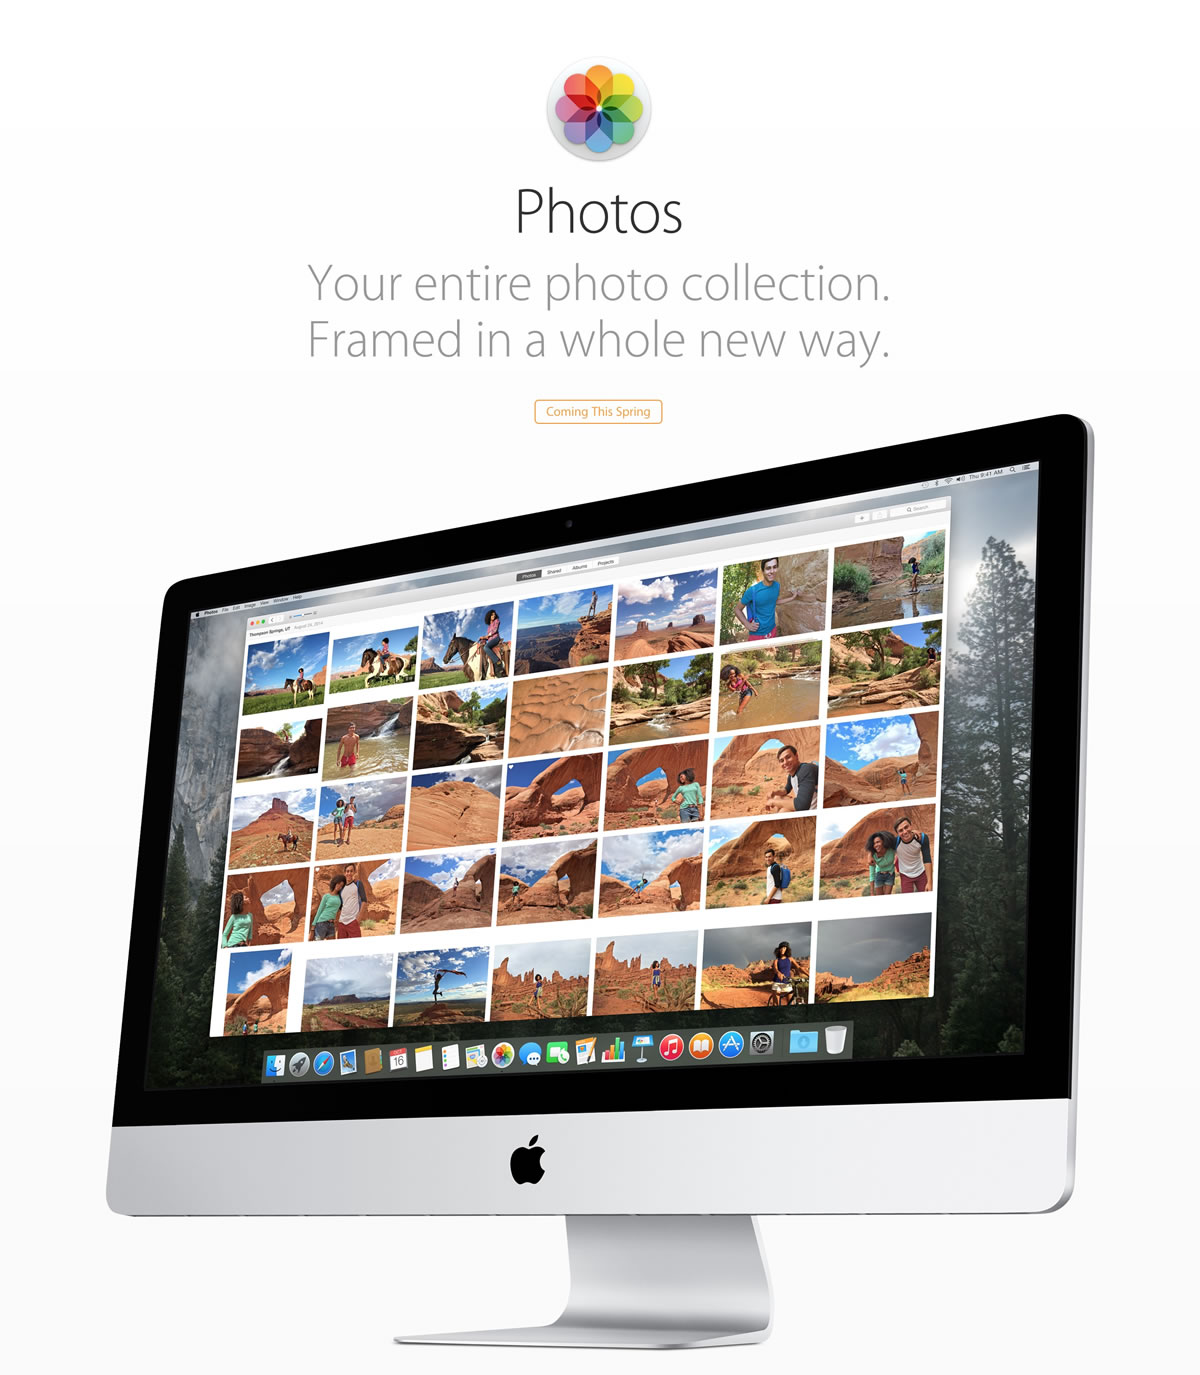 ｢Photos for OS X｣のスクリーンショットギャラリーやハンズオン動画